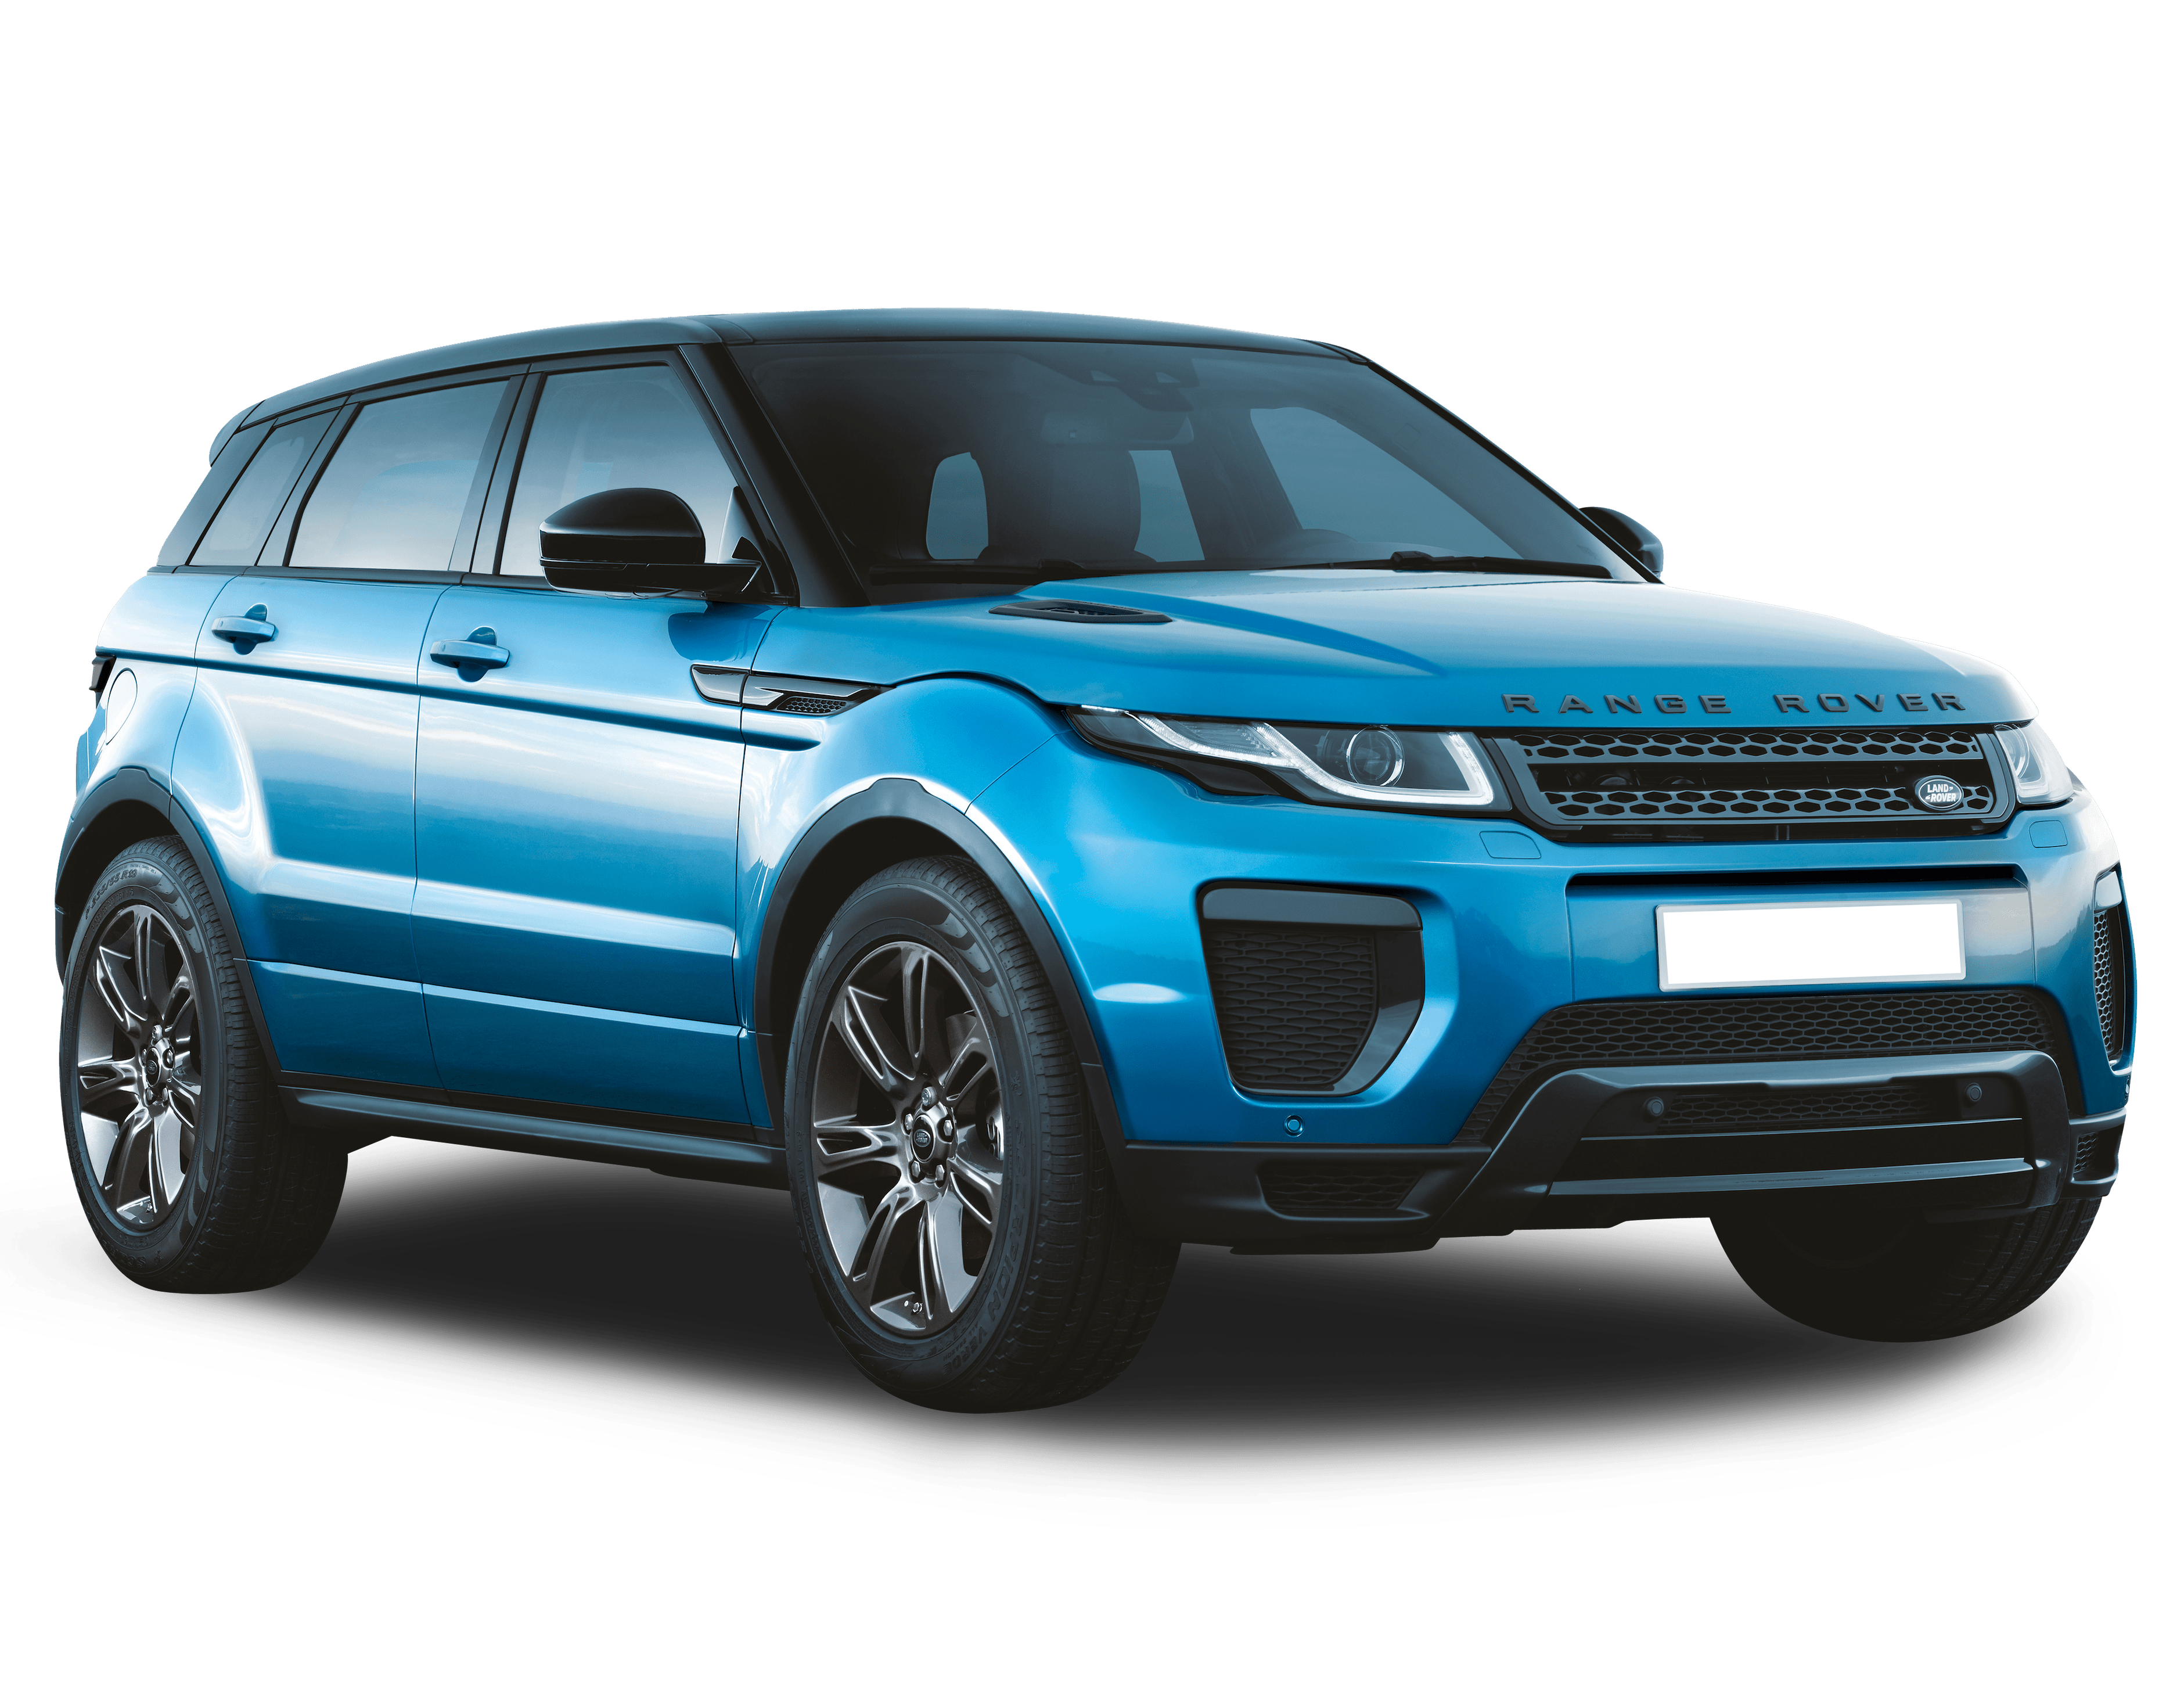 Range Rover Evoque 2017 User Manual